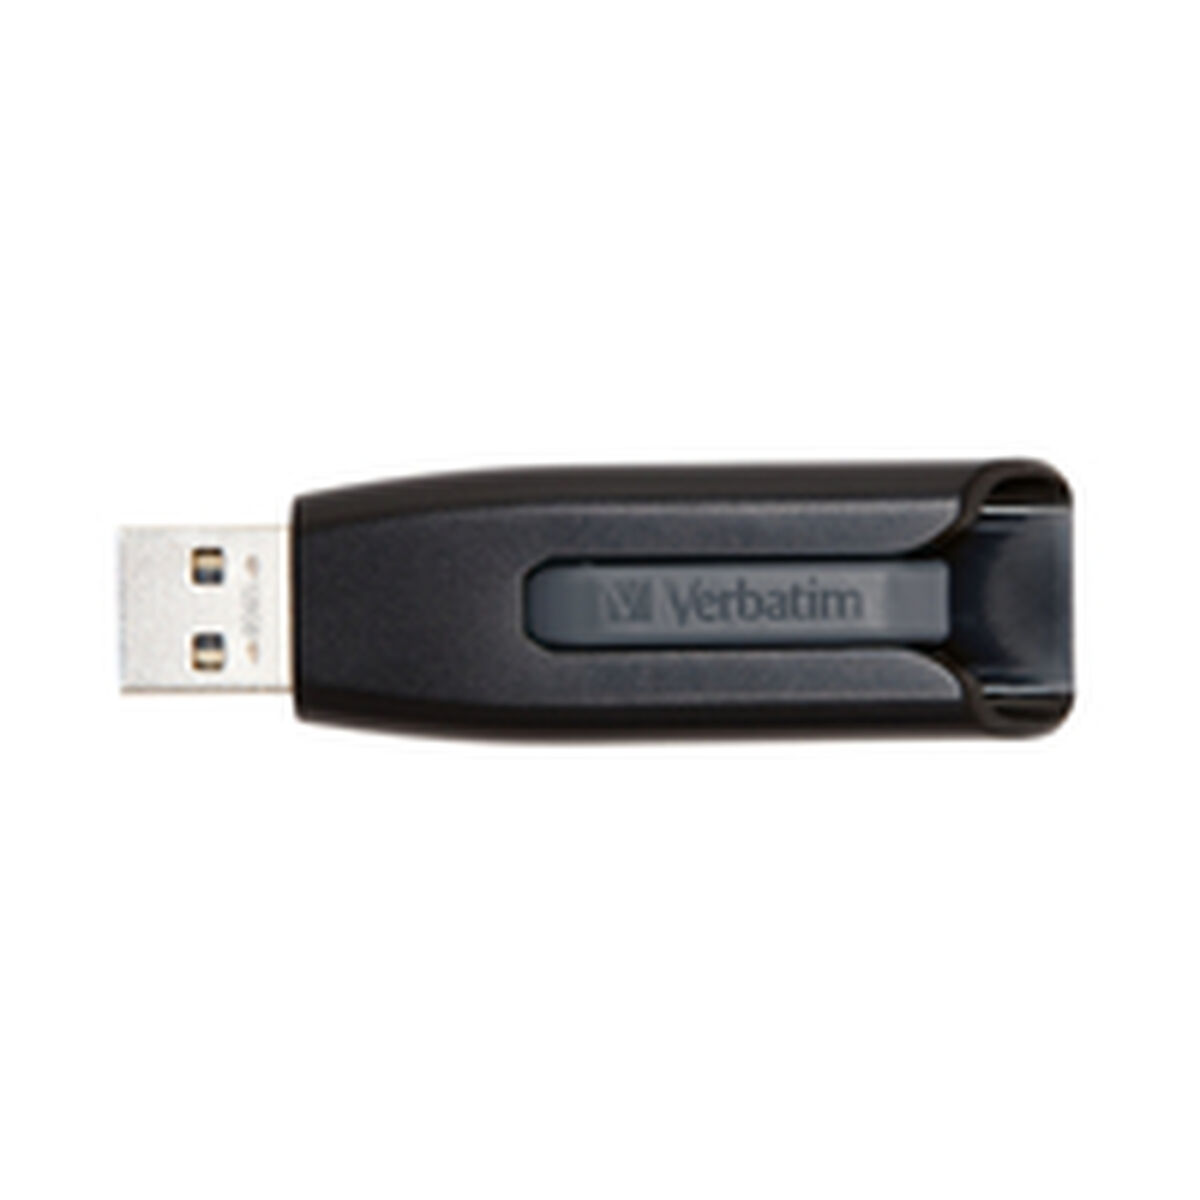 Clé USB Verbatim 49189 Noir Multicouleur 128 GB